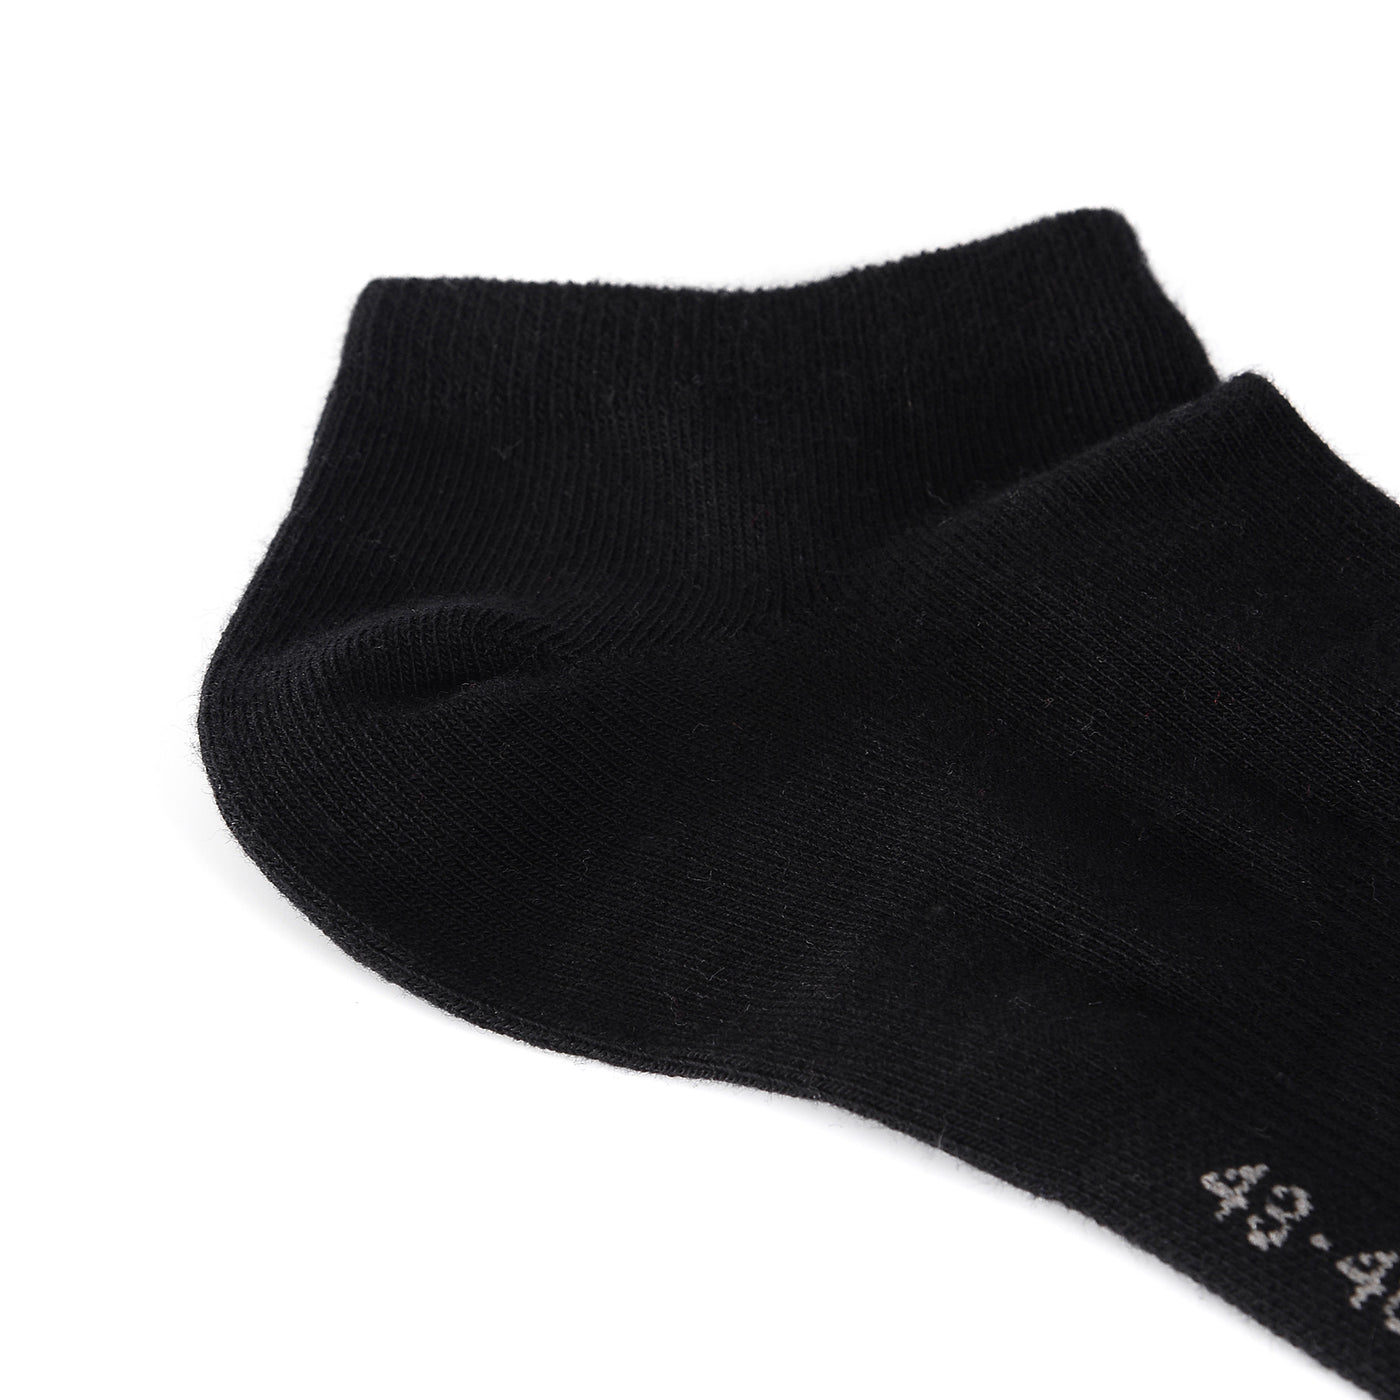 Laulax 6 pares de calcetines deportivos con soporte para el arco del mejor algodón peinado, negro, talla UK 12 - 14 / Europ 47 - 49